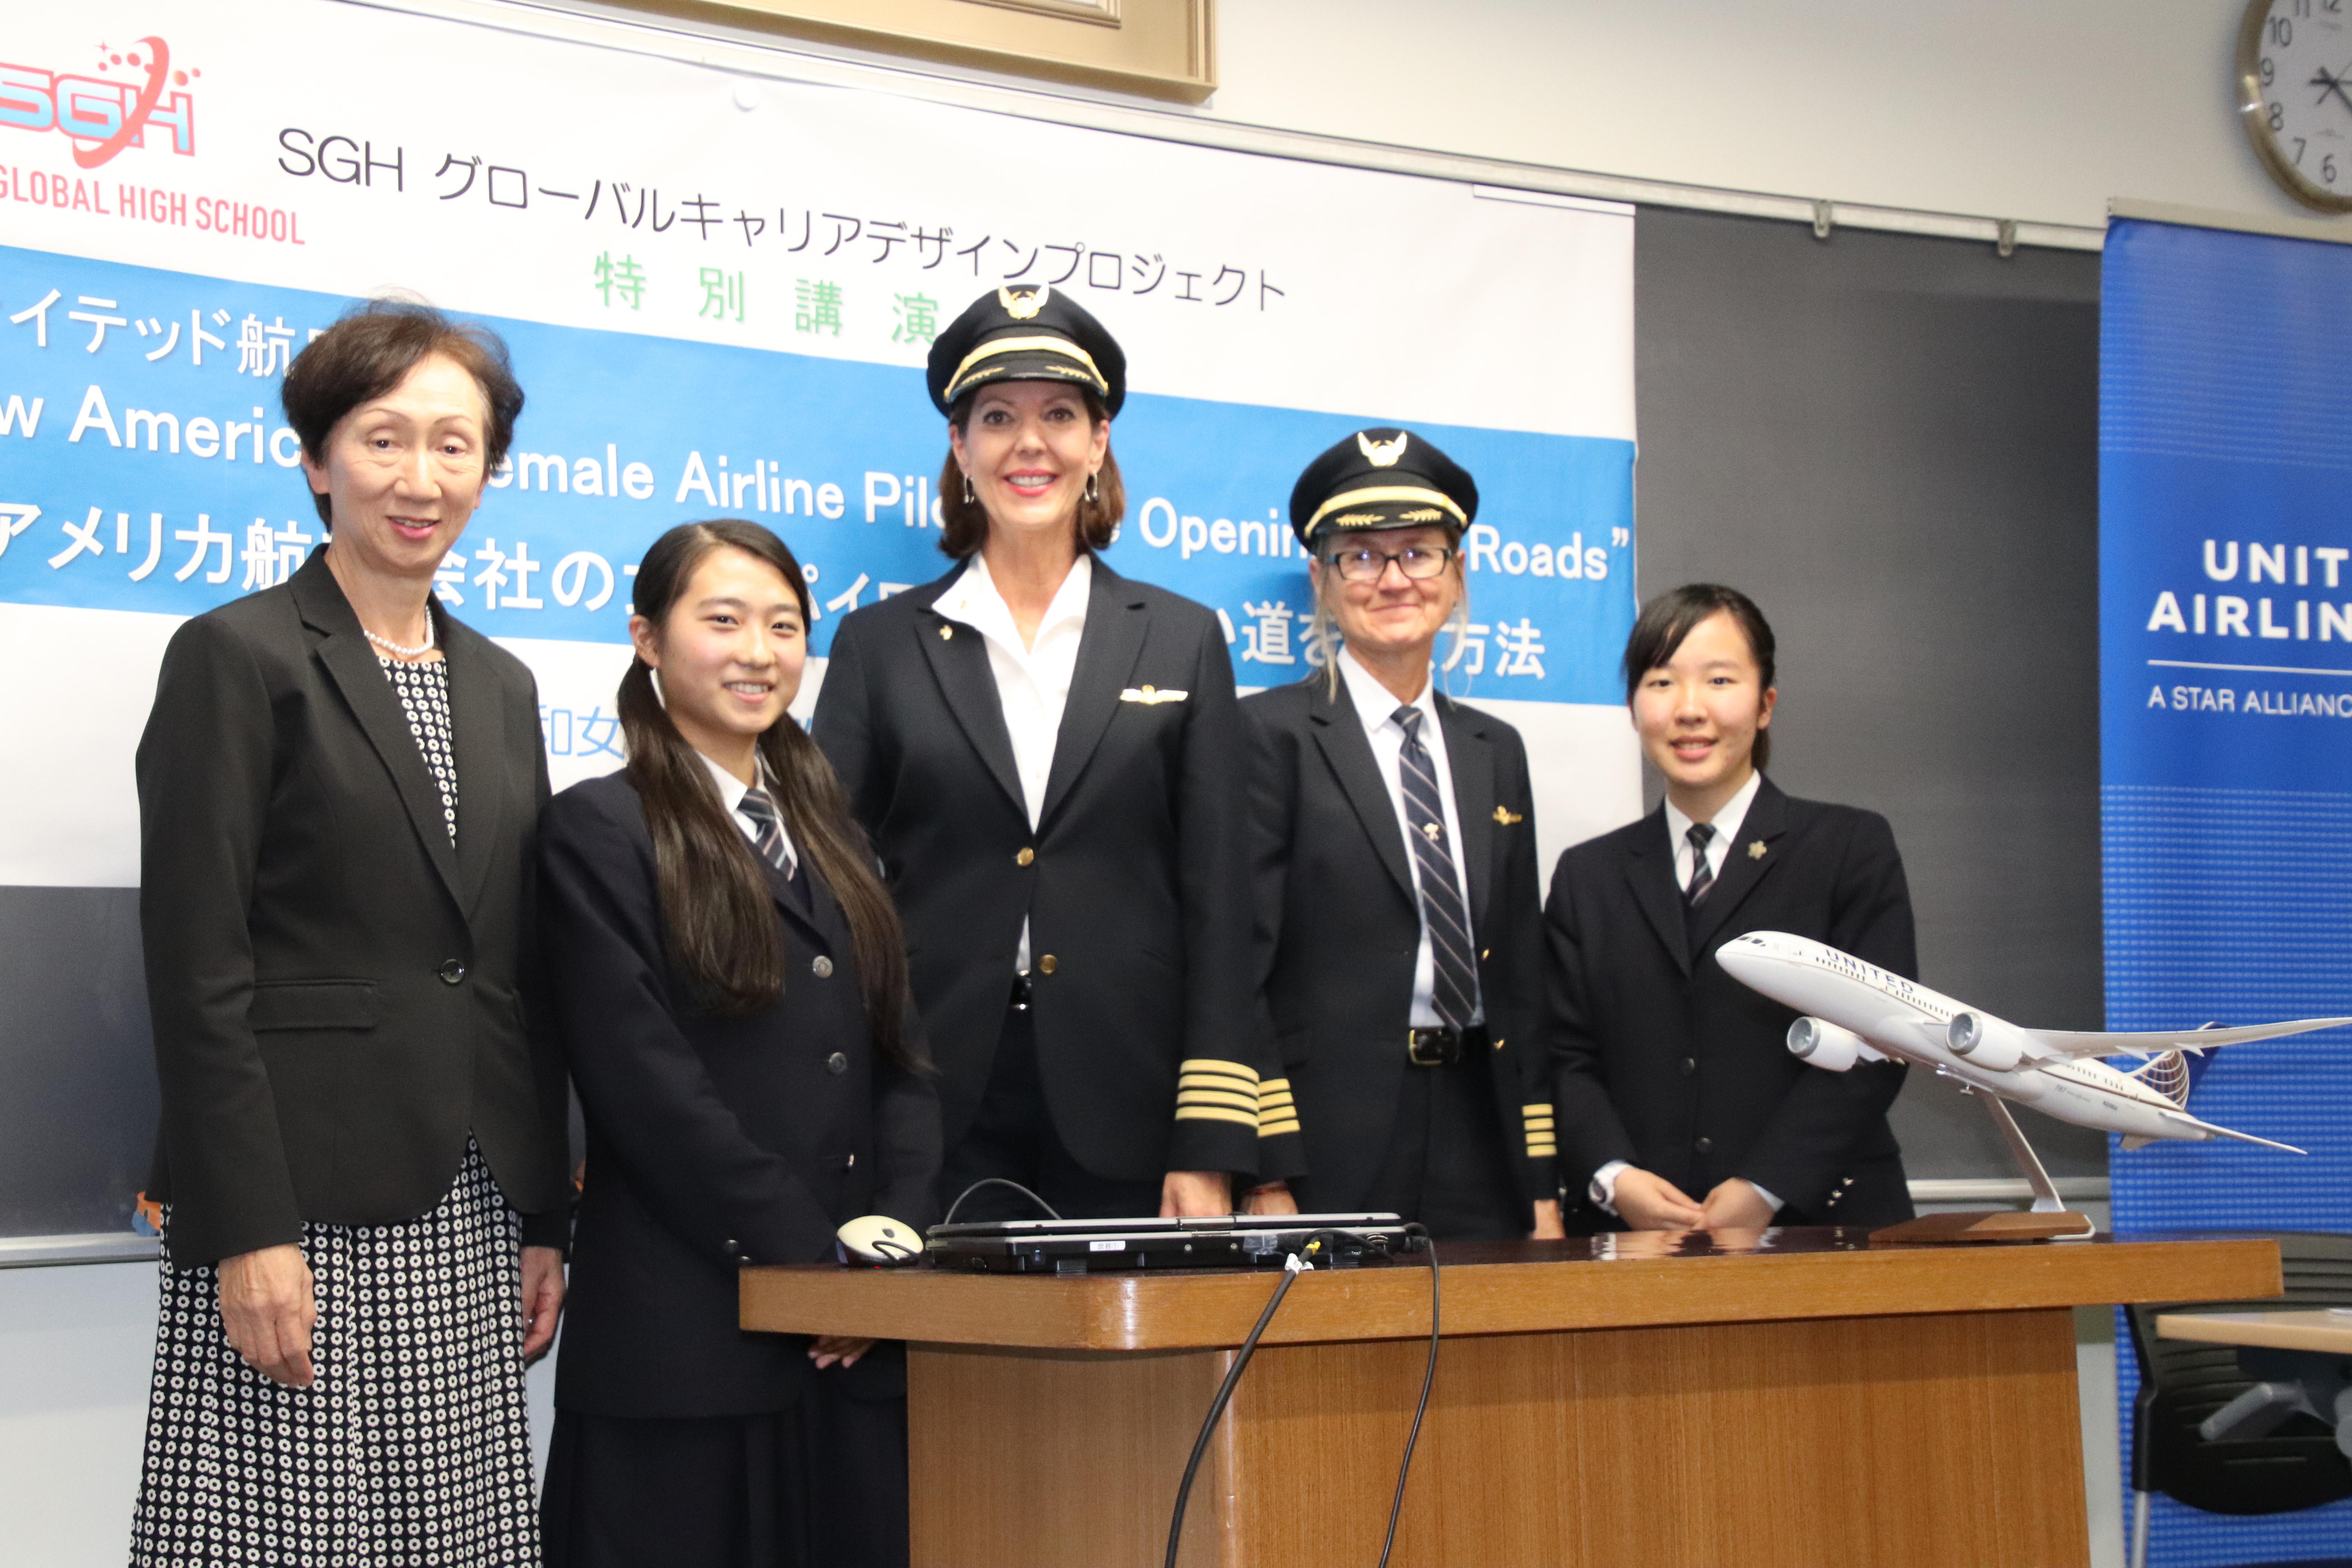 昭和女子大学附属昭和高校で女性パイロットが講演